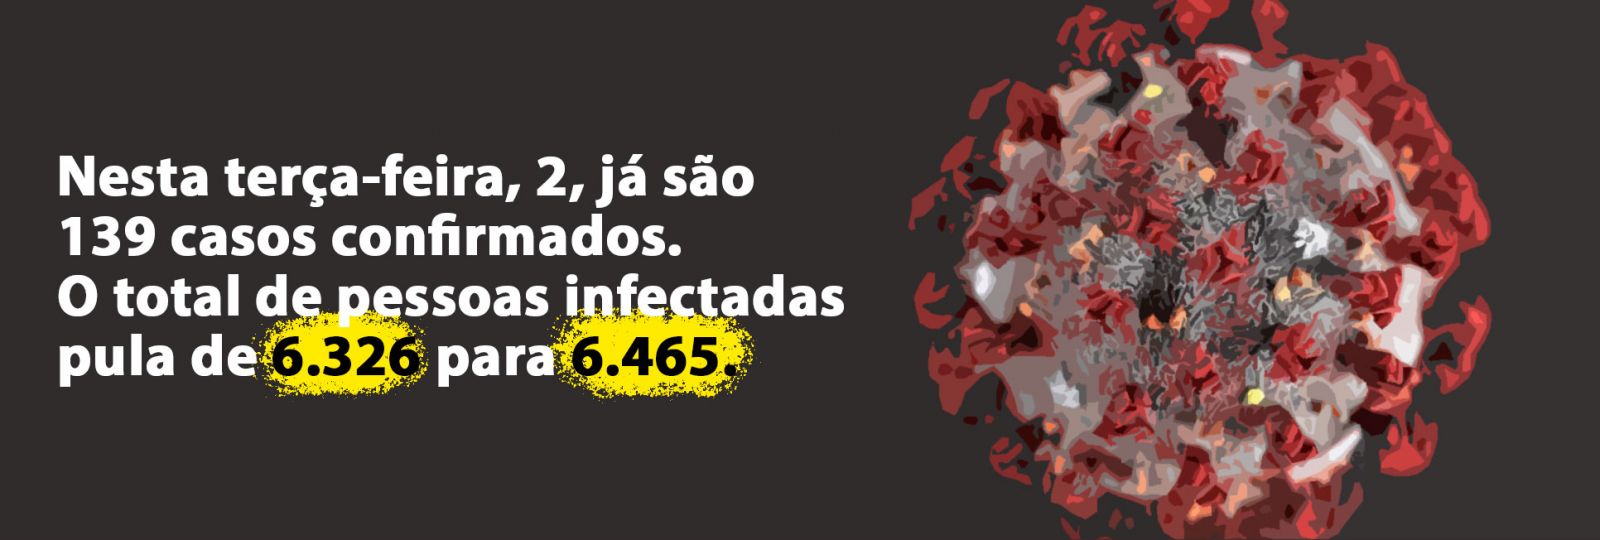 ACRE ATINGE A MARCA DE 6465 CASOS CONFIRMADOS DE COVID-19 - News Rondônia